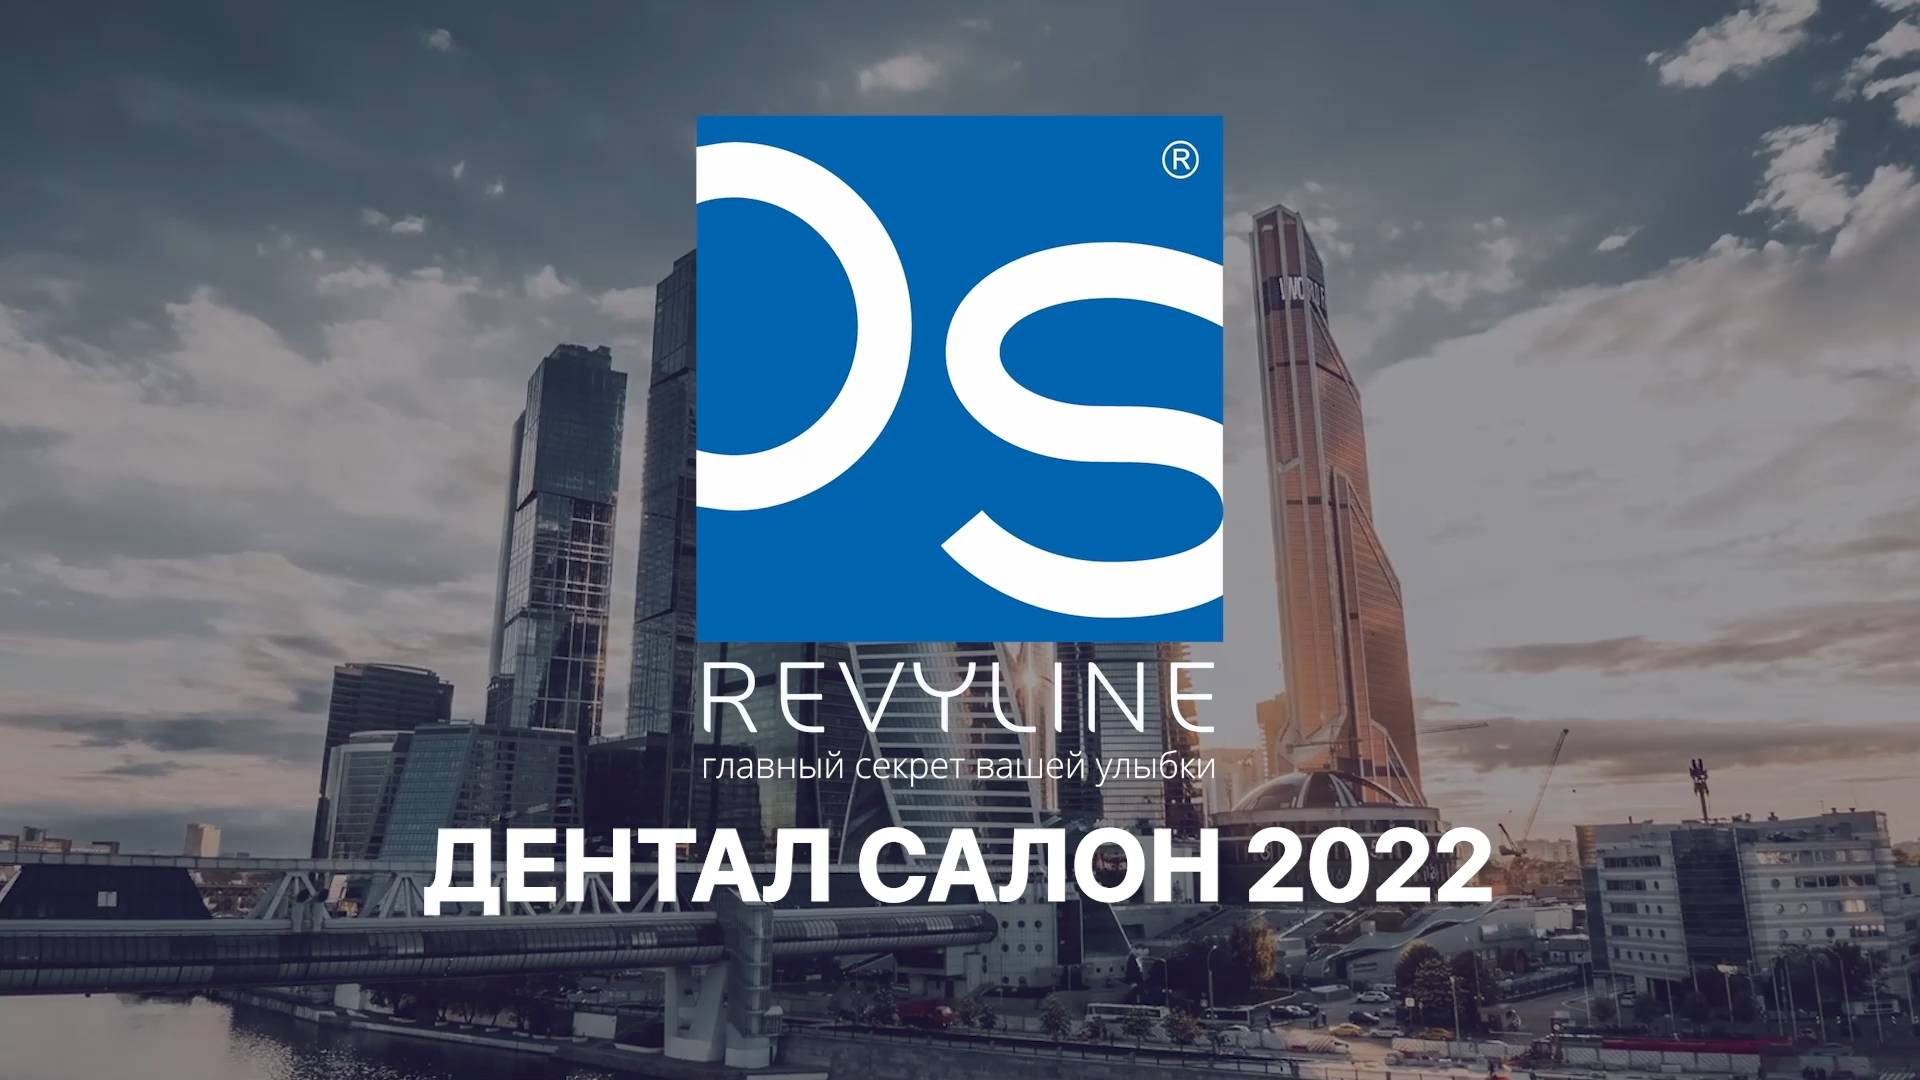 «Дентал Салон» 2022